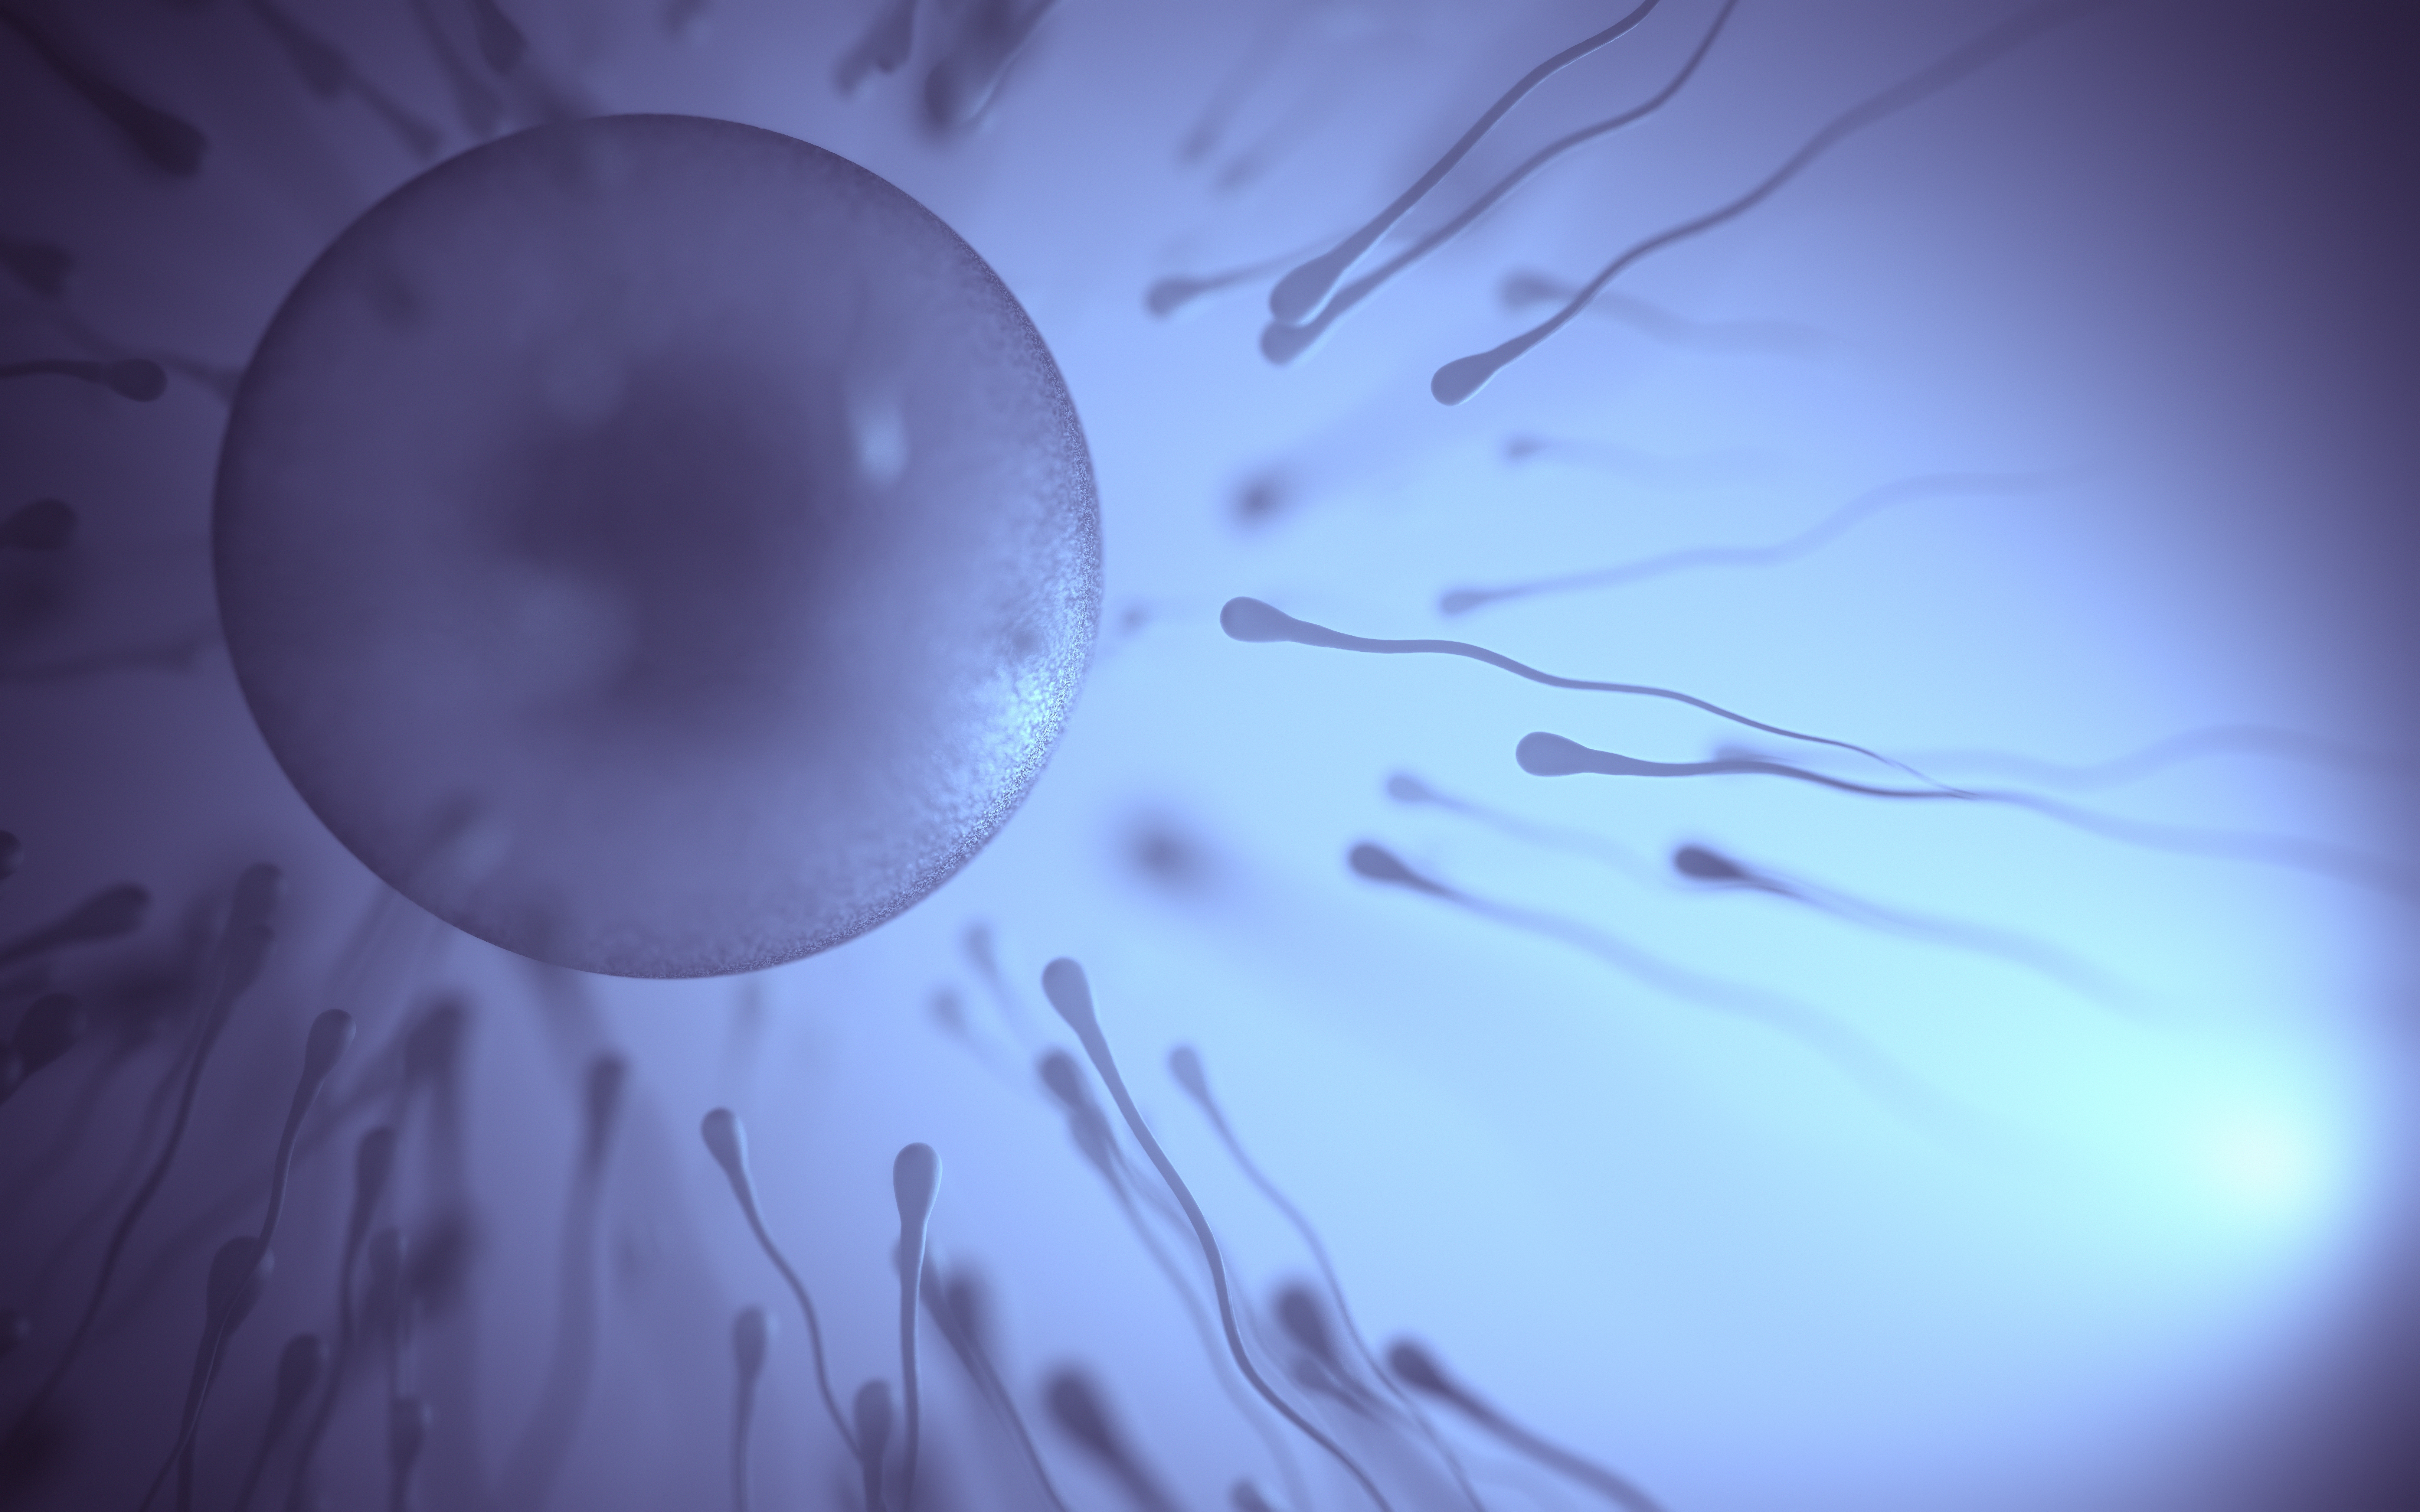 Sperm fertilizing an egg visualization